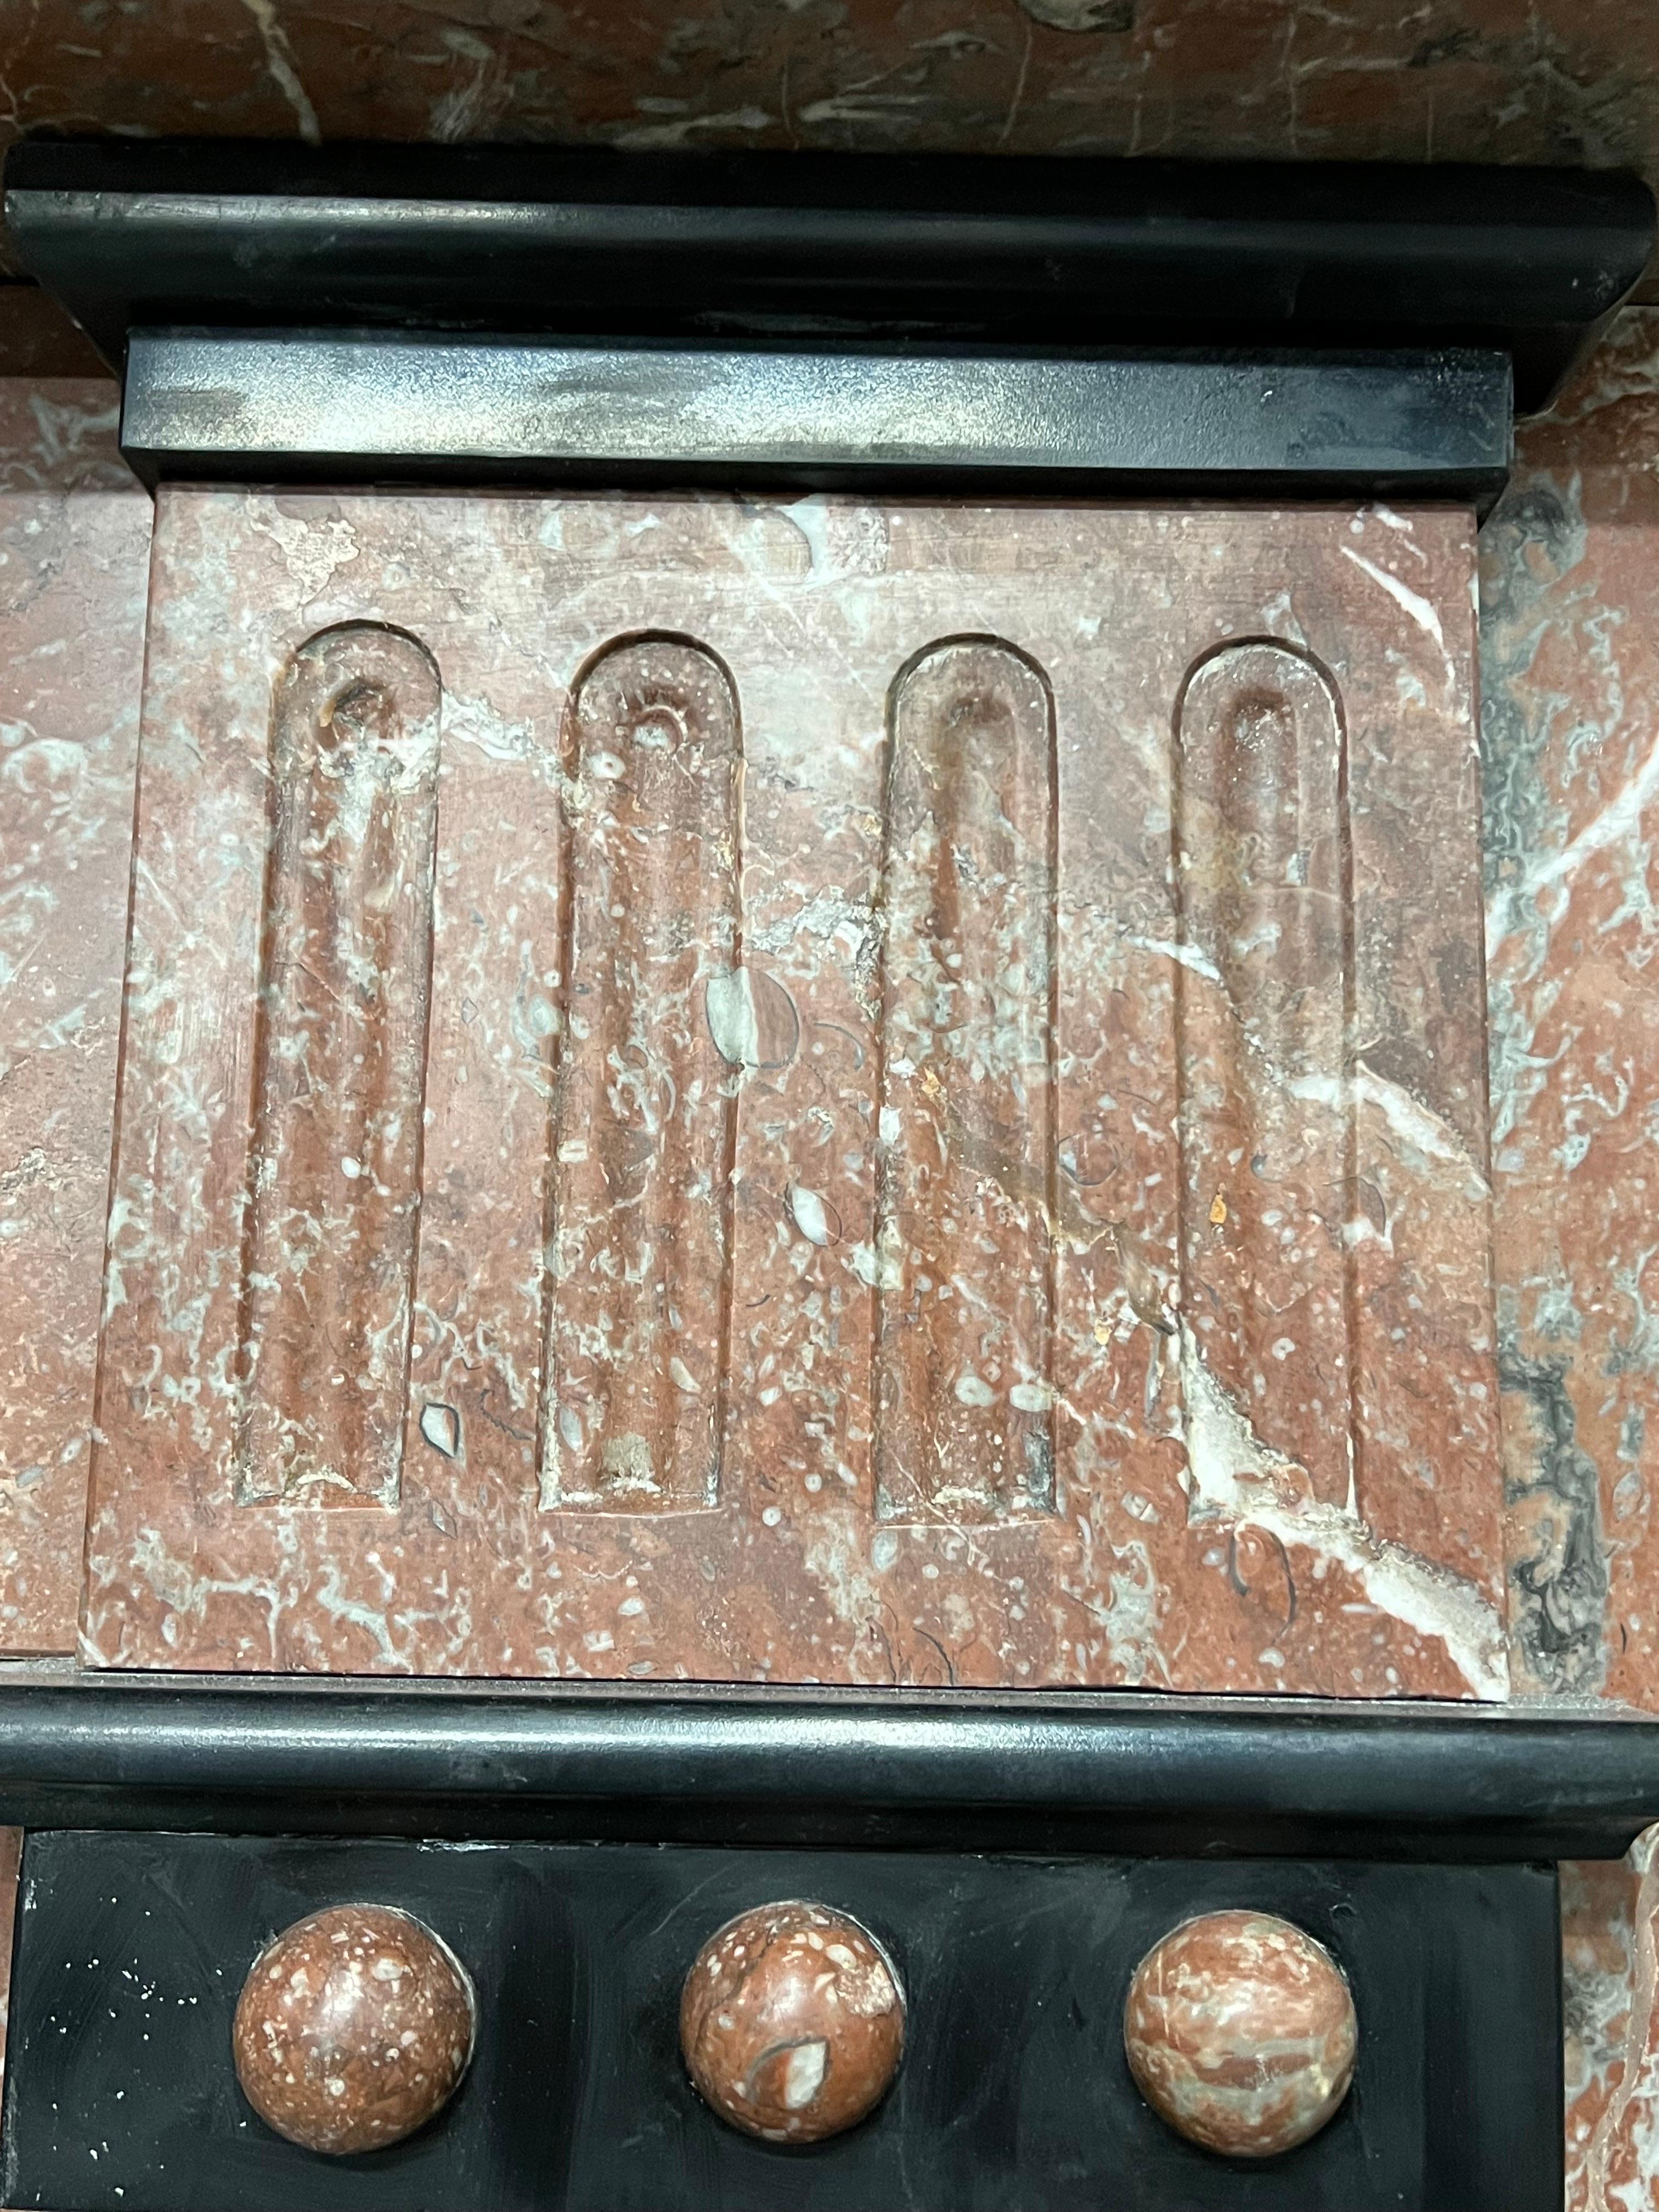 cheminée en marbre du XIXe siècle.
Imposant contour de cheminée en marbre d'origine victorienne récemment récupéré dans une maison de ville de l'est de Londres.
Sculptée à la main et légèrement polie, elle présente une belle couleur rouge vif. Les